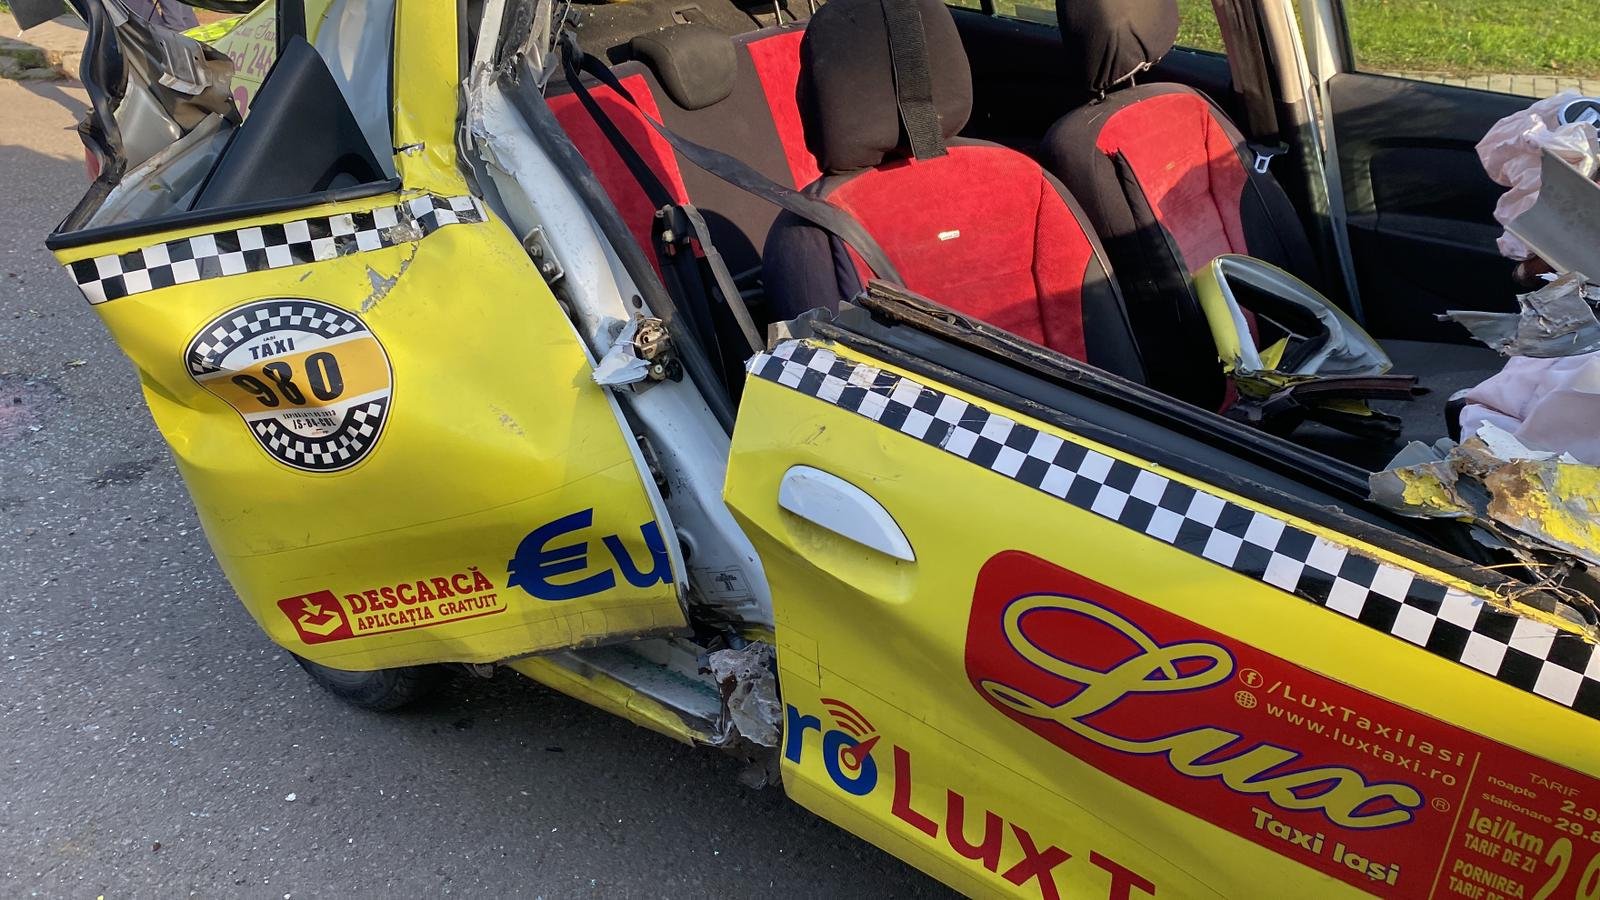  FOTO – Un buldoexcavator s-a înfipt dimineaţă în zona Păcureţ într-un taxi care circula regulamentar